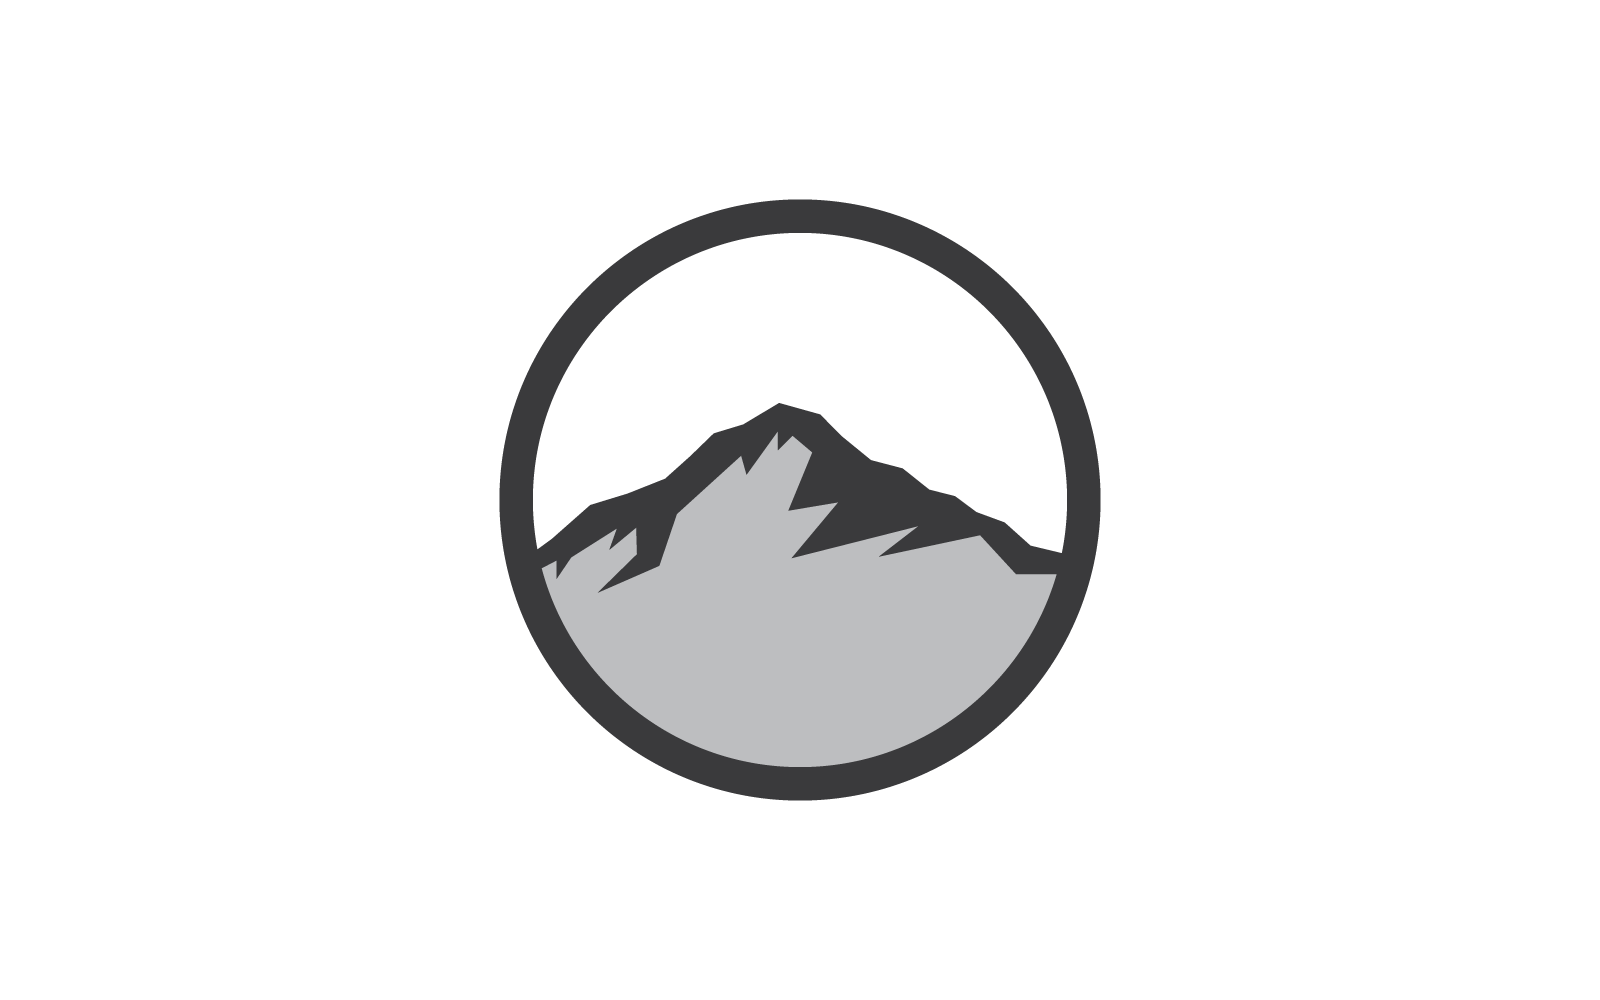 Mountain illustration logo icon vector design